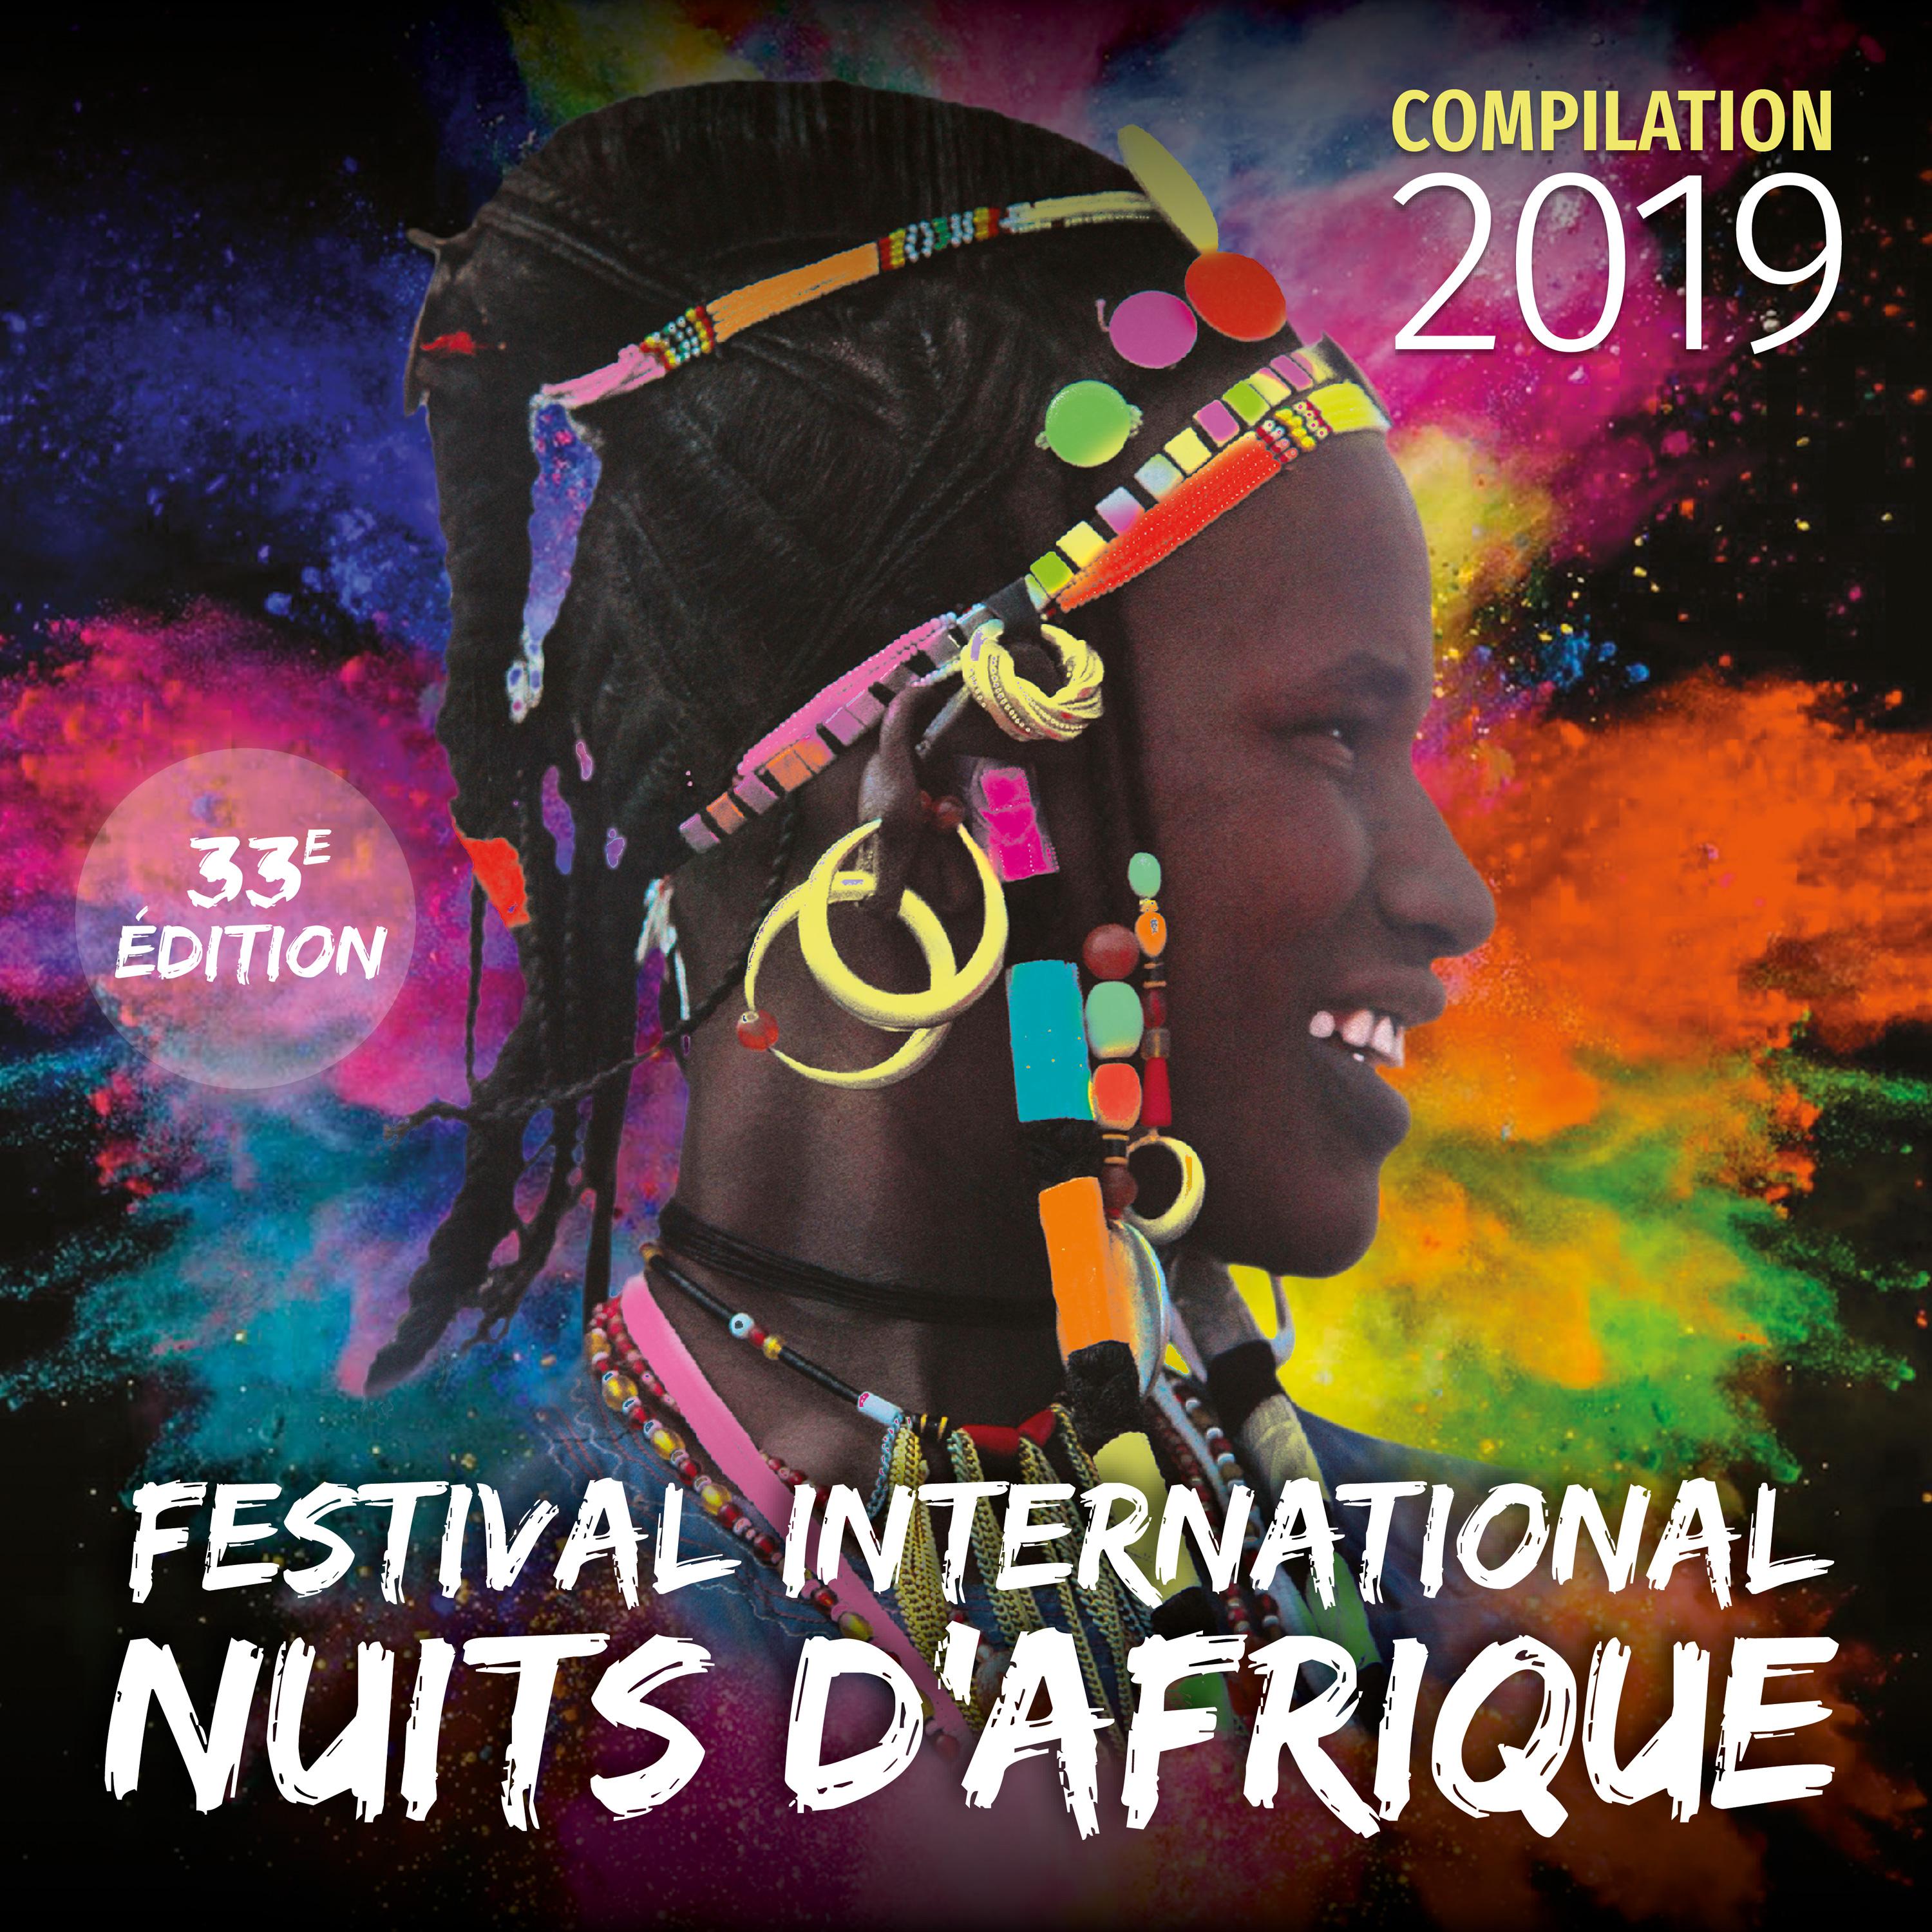 Festival international Nuits d'Afrique 33ème édition - Compilation 2019